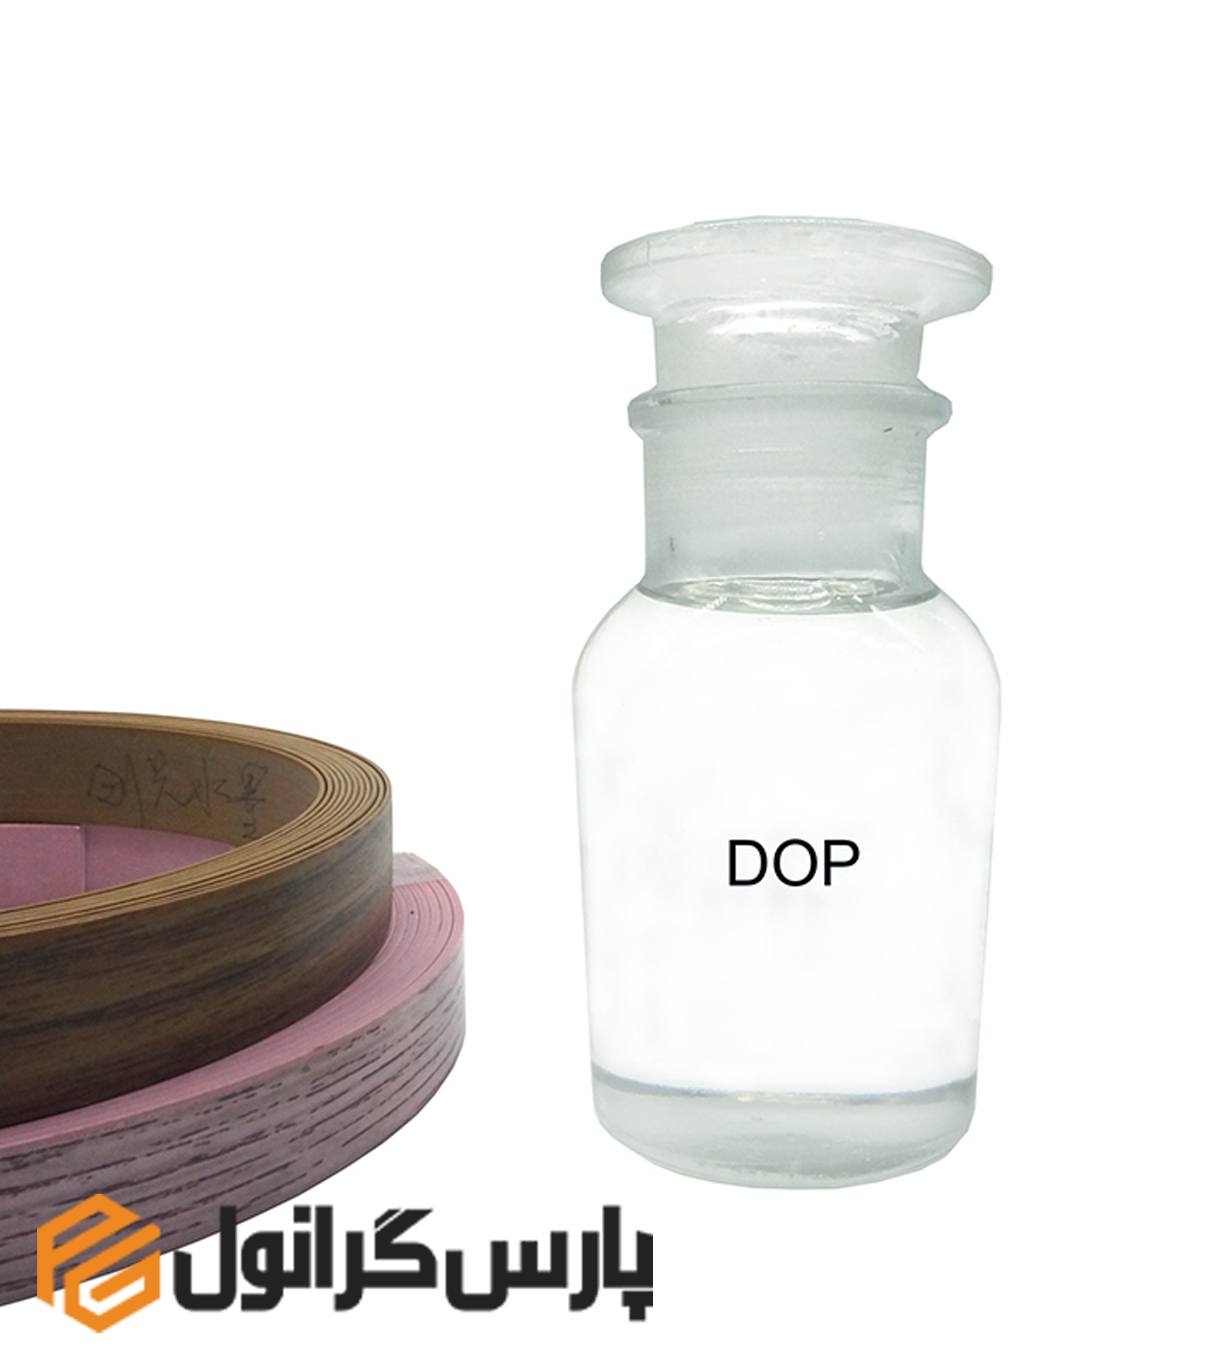 کاربرد روغن dop